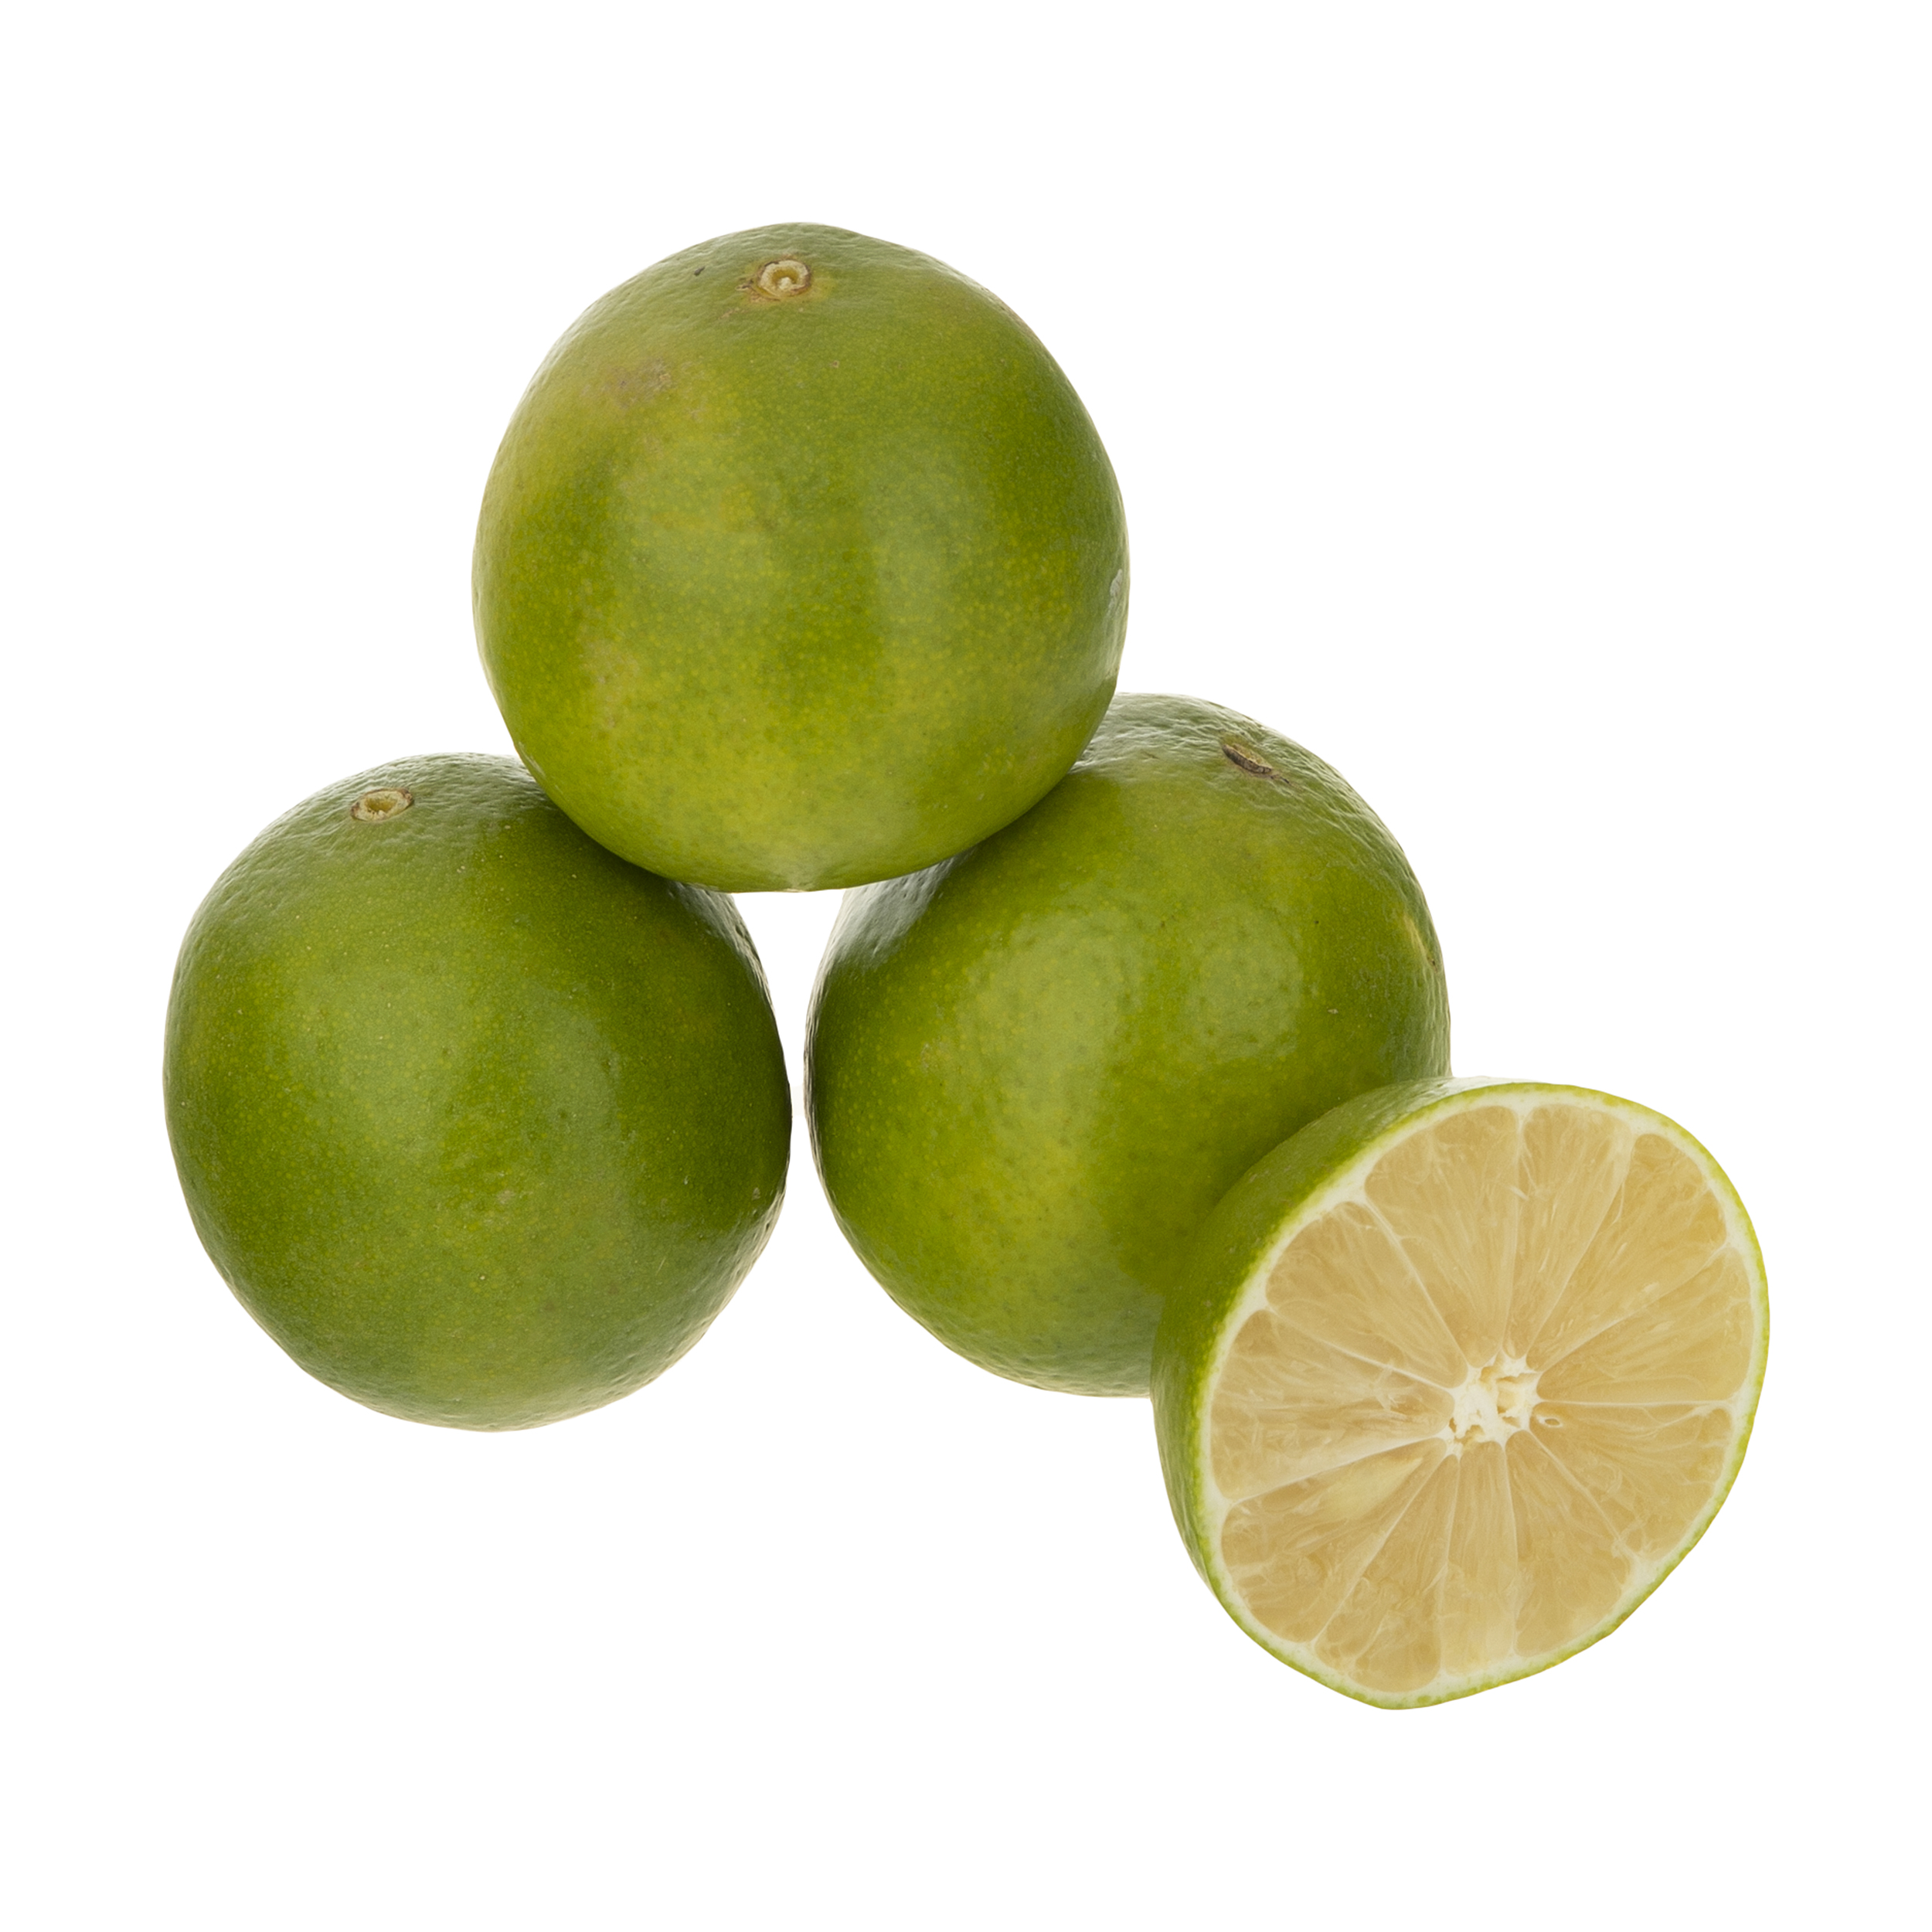 لیمو شیرین میوه پلاس - 1 کیلوگرم